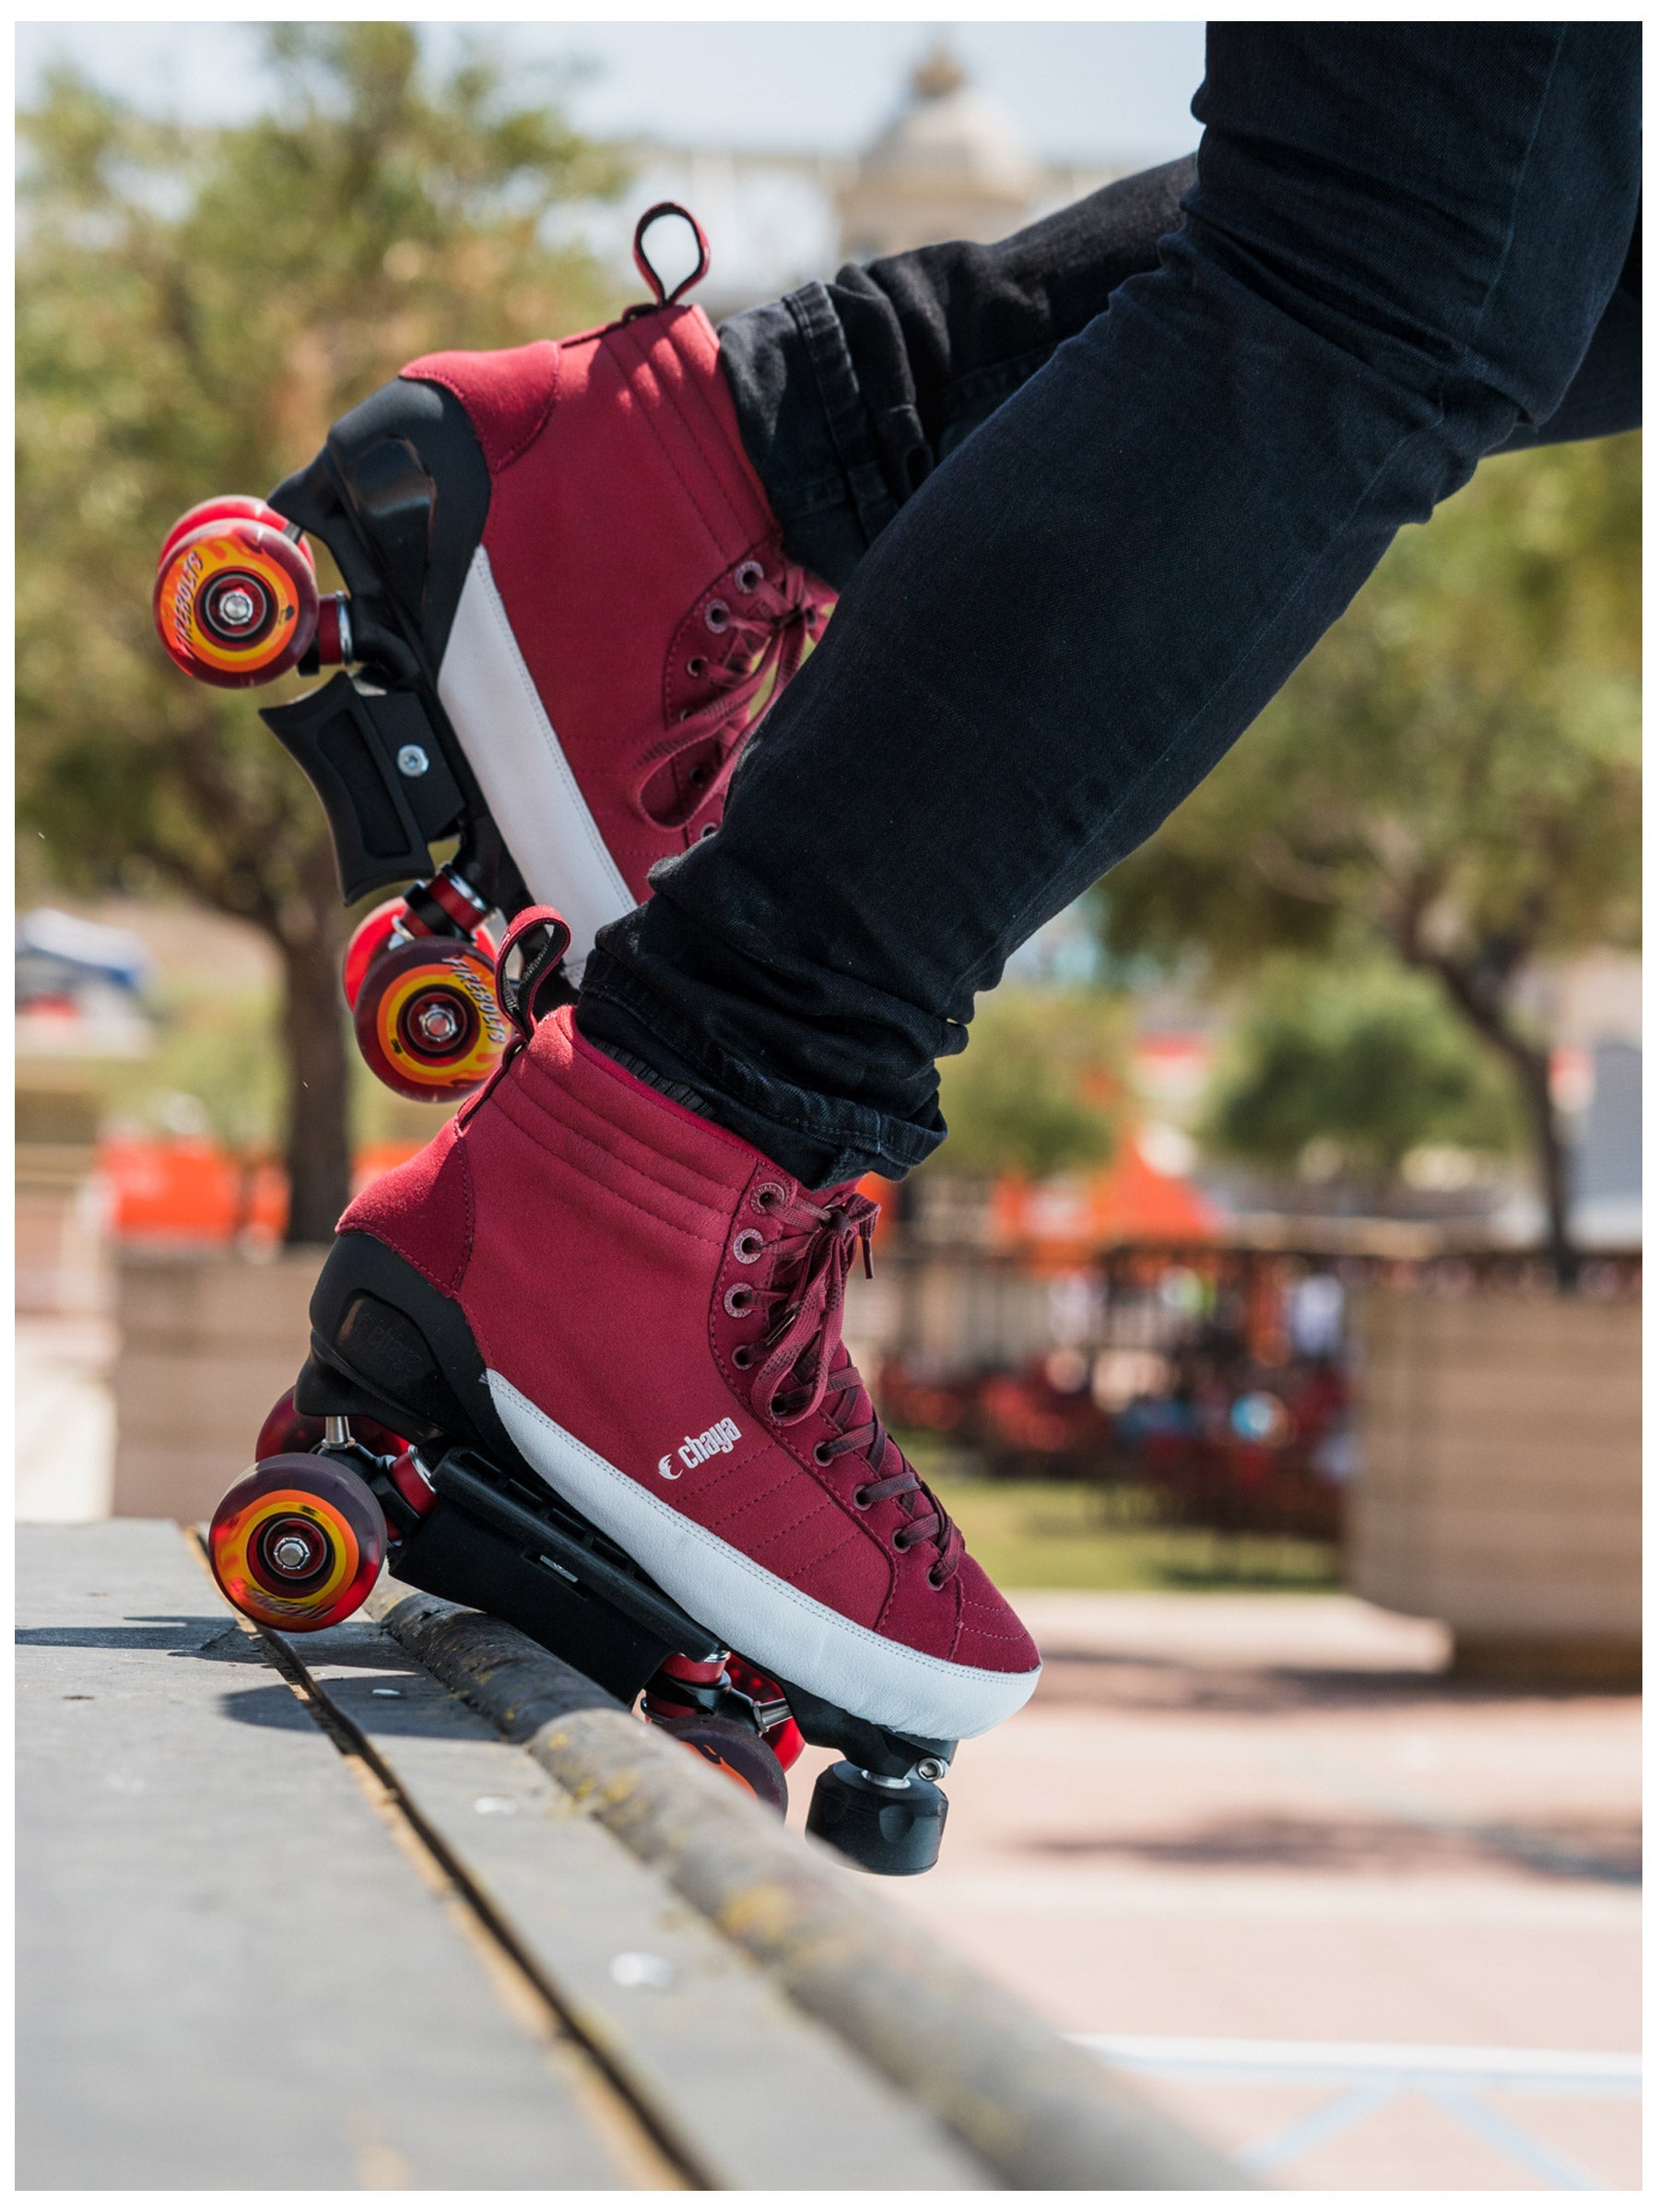 Chaya Park Skates Karma Size 11 Quad Roller Skate Set Complete Black Red NEW 